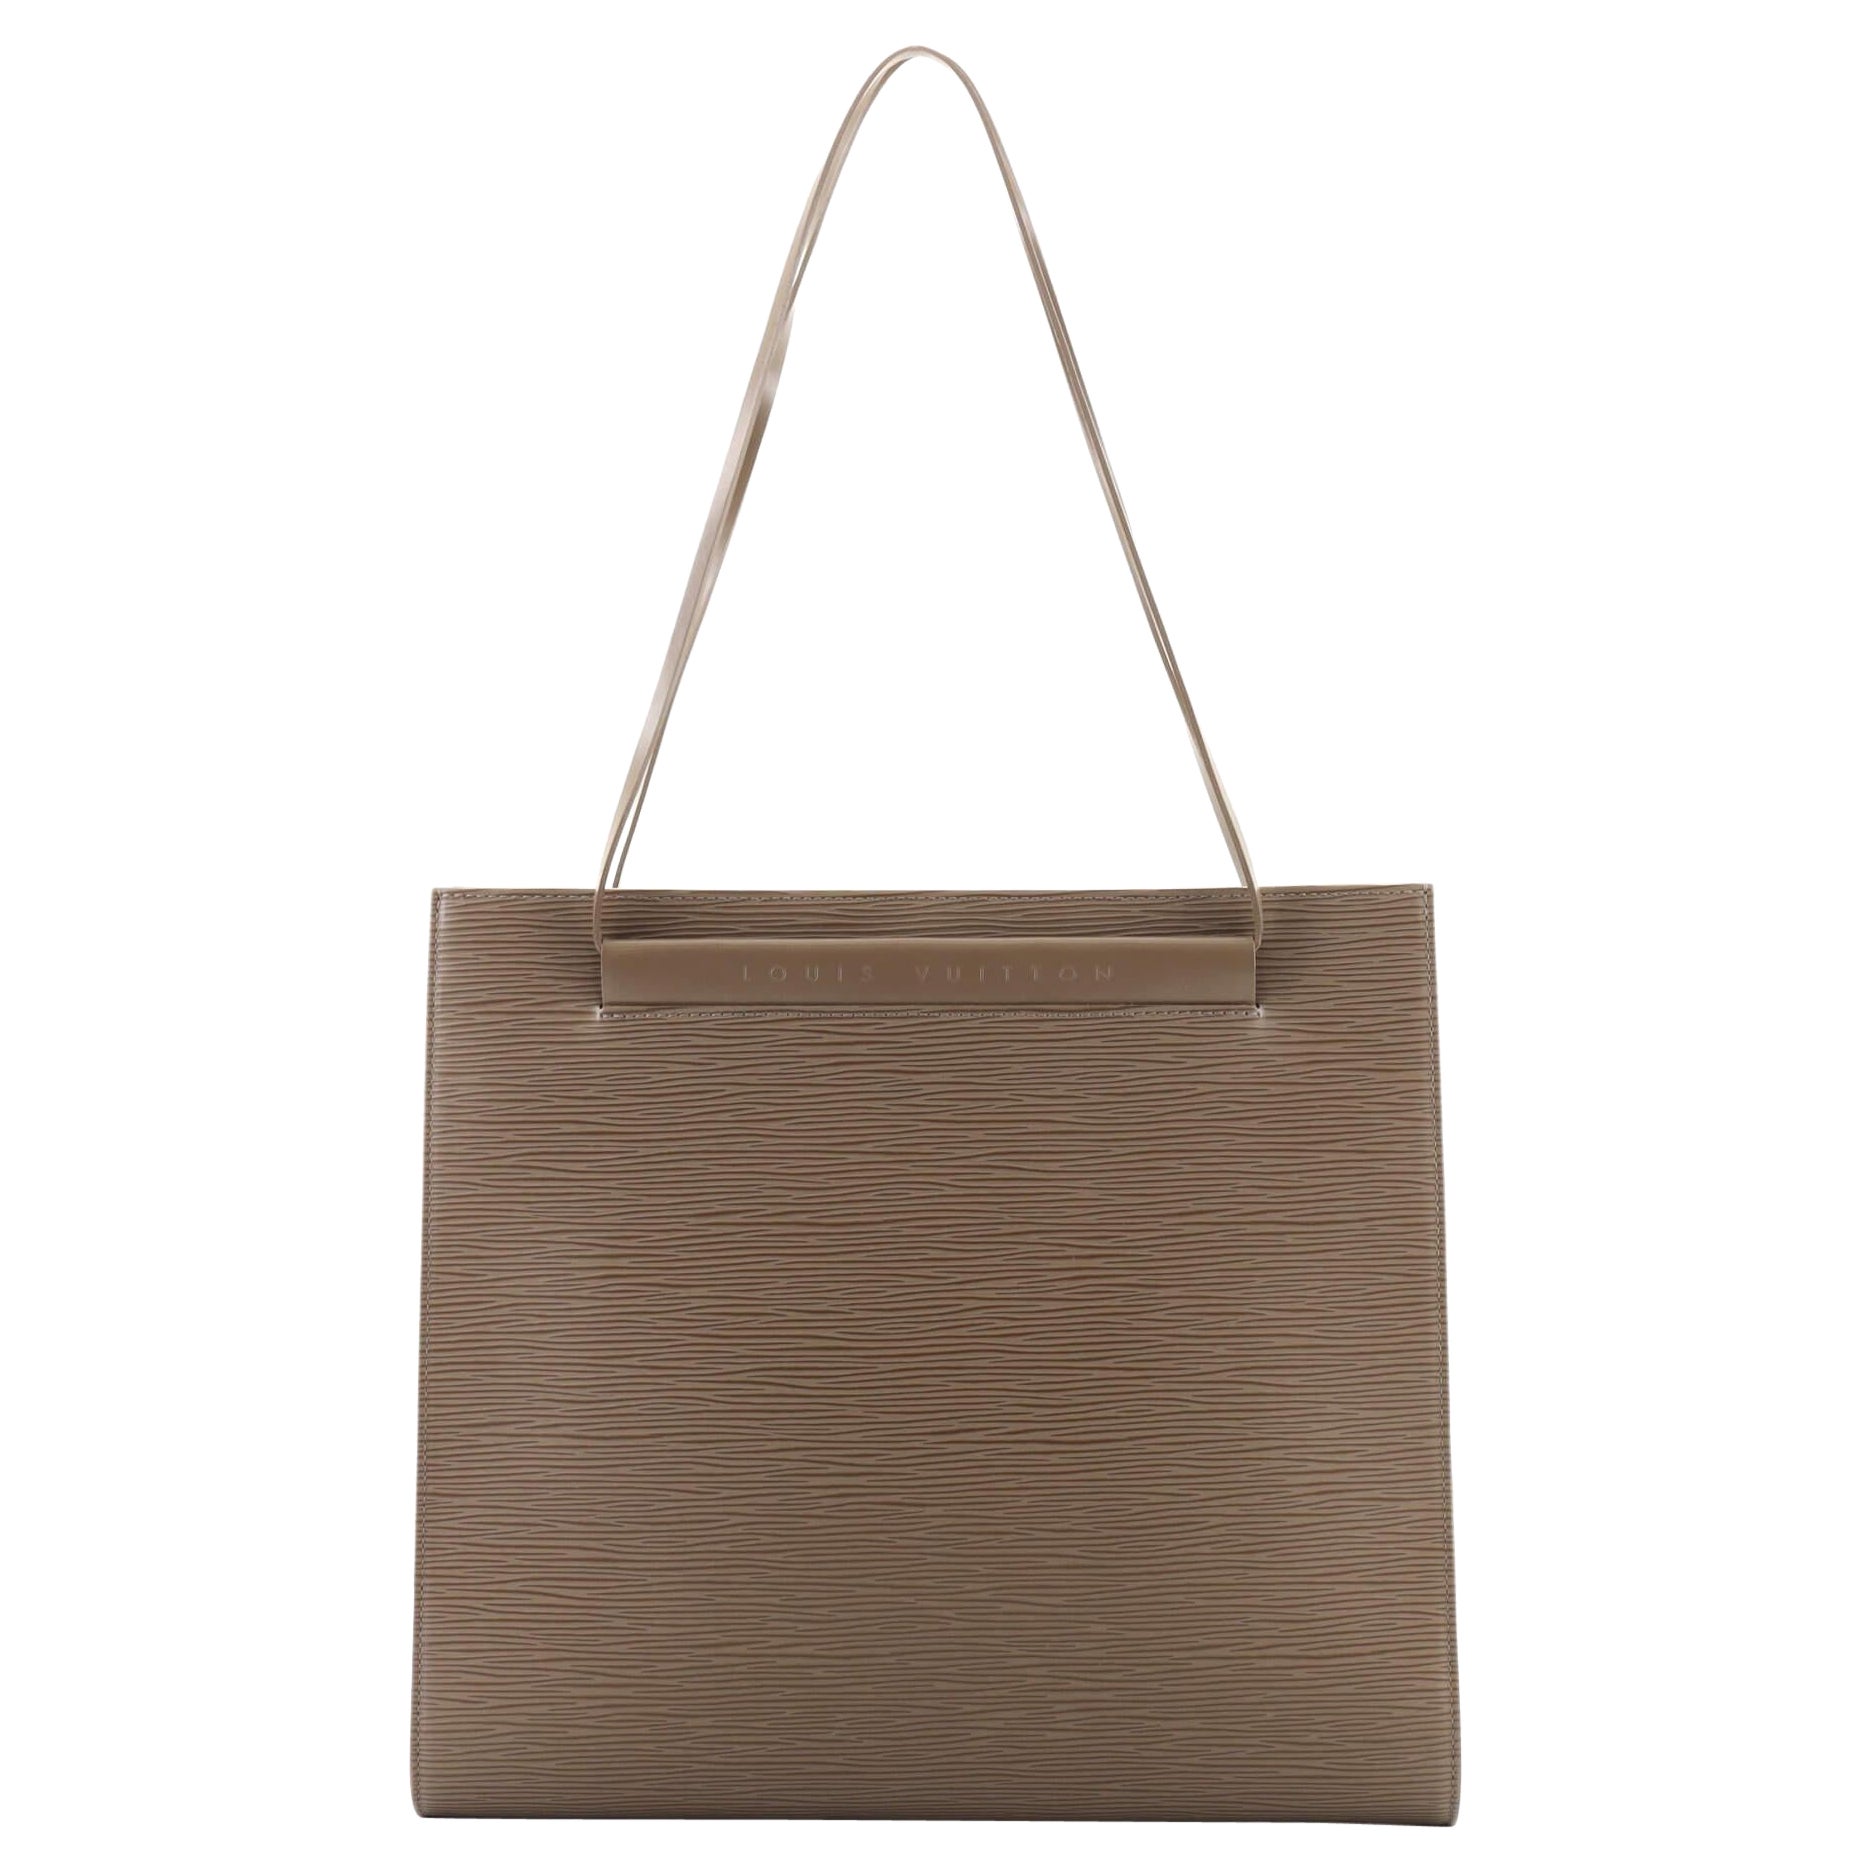 Louis Vuitton Saint Tropez Handbag Epi Leather